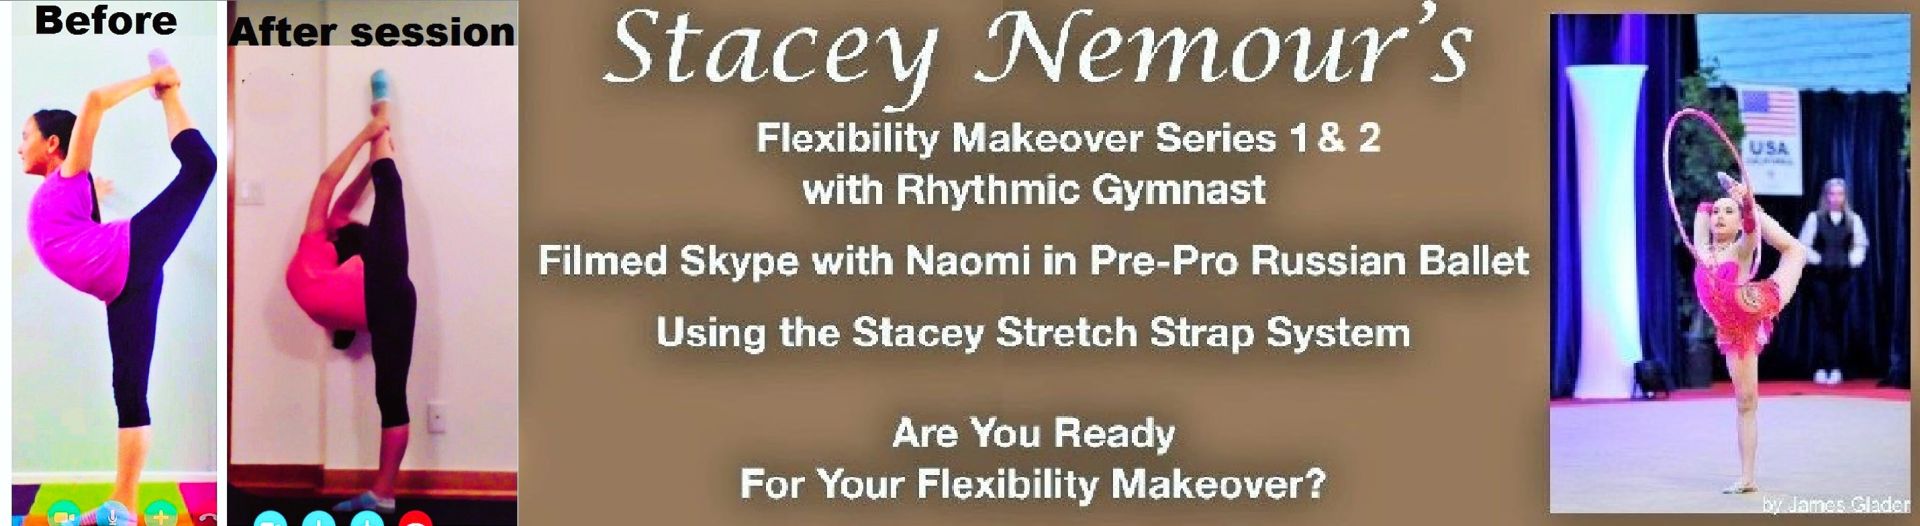 Flexibility Makeover for Rhythmic Gymnasts Course Card